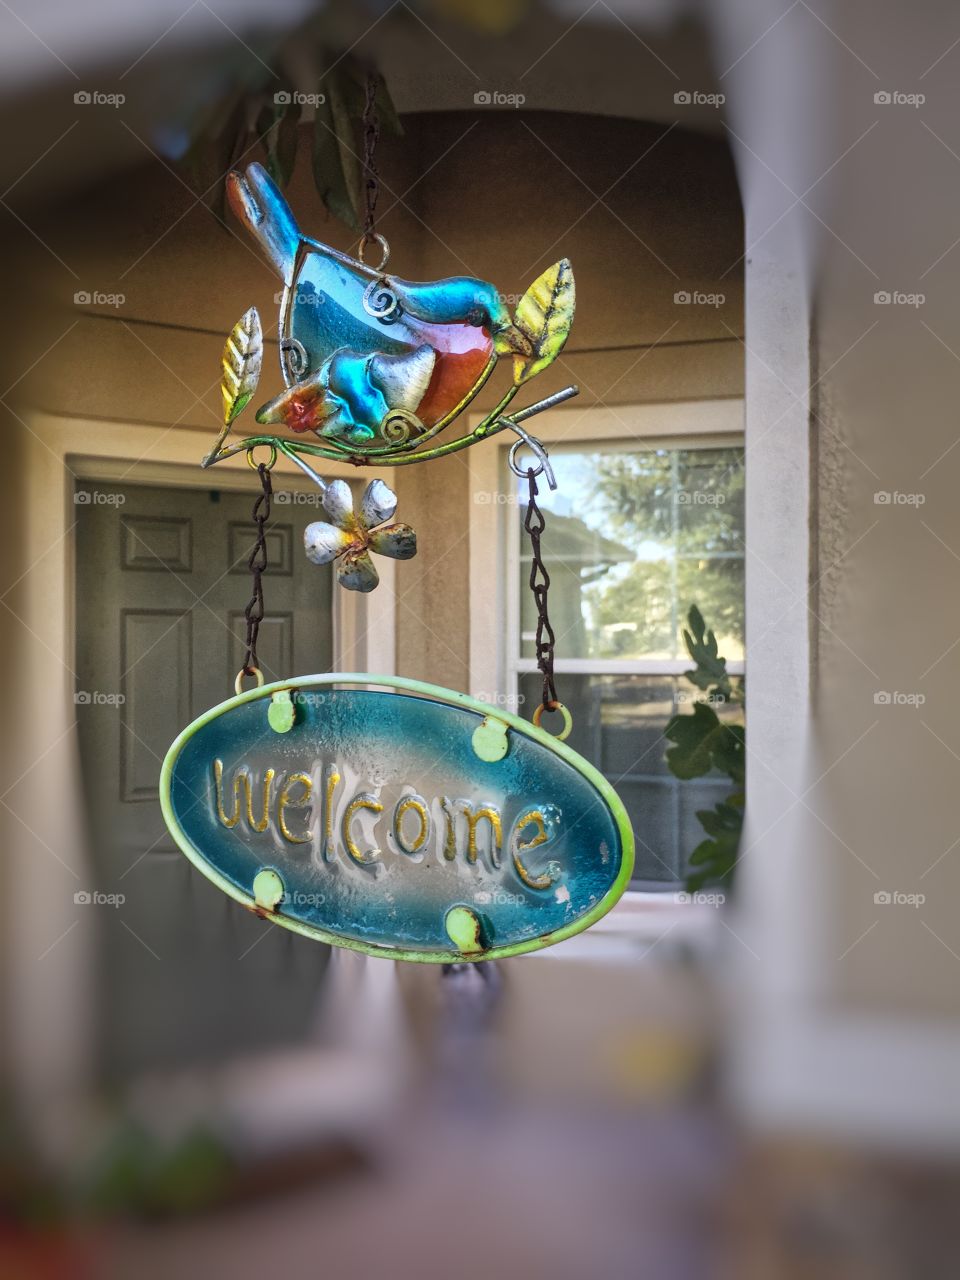 Welcome sign with a bird hangs in front of the door